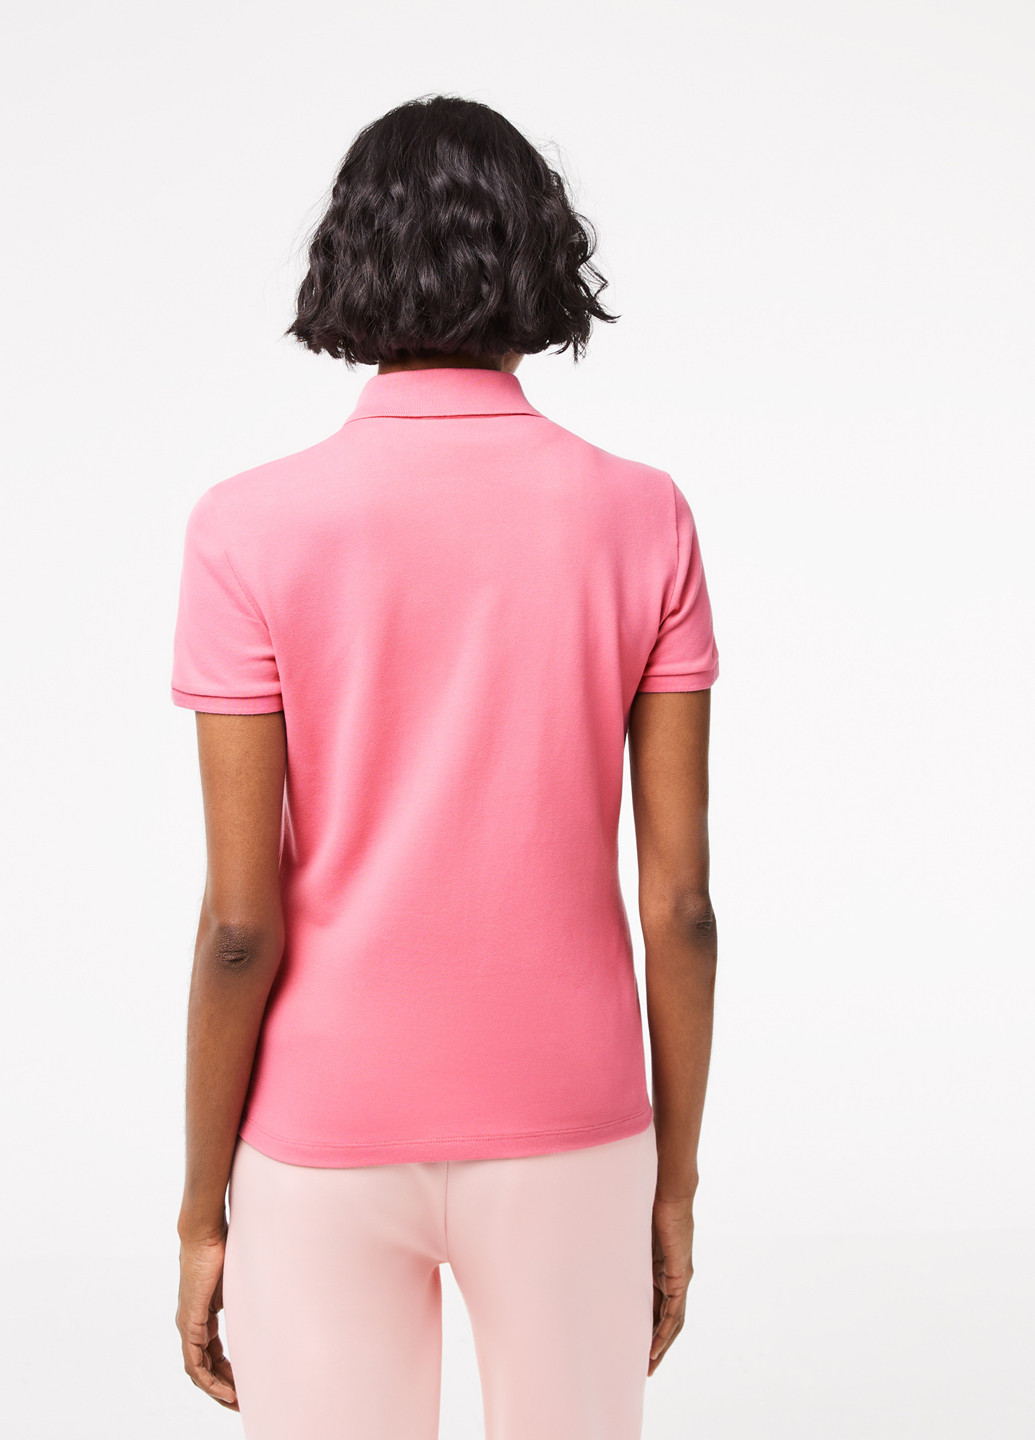 Розовая женская футболка-поло Lacoste однотонная